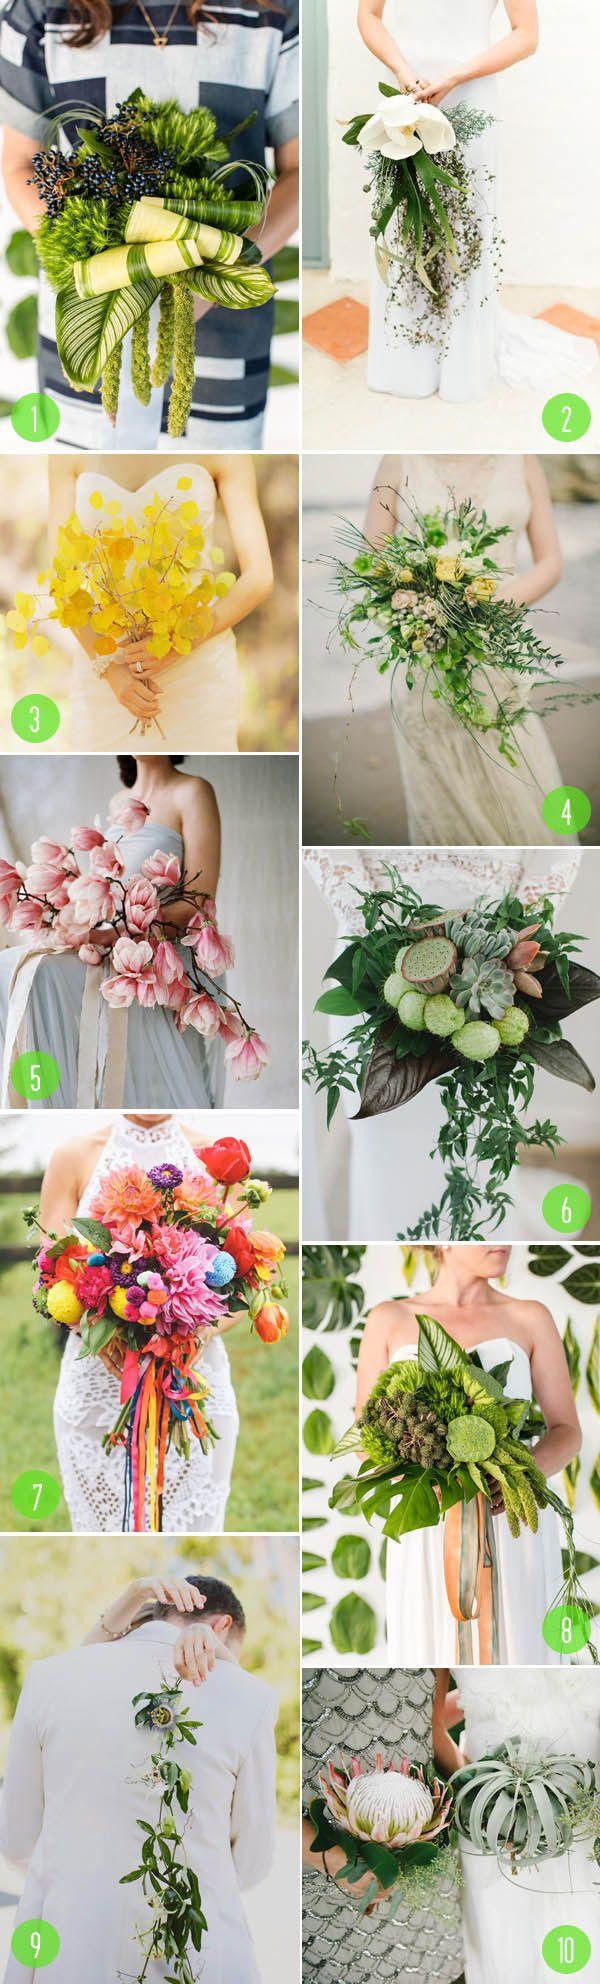 Wedding - Top 10: Unusual Bouquets